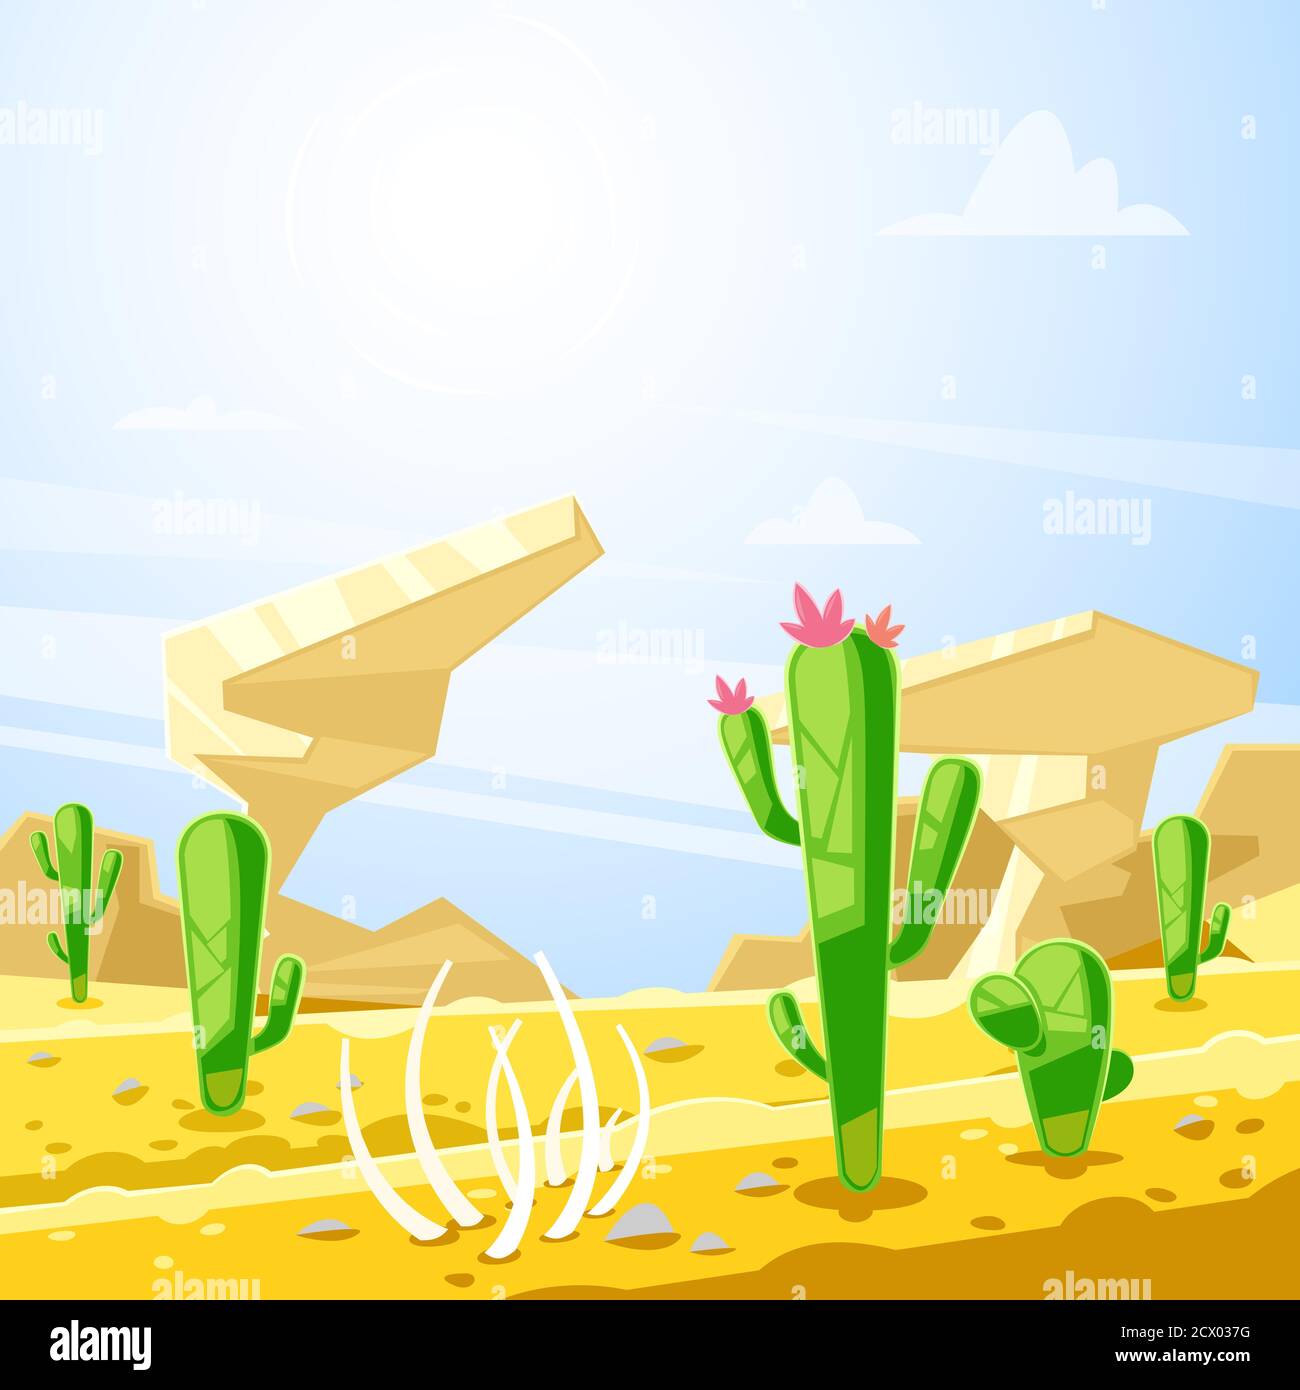 Paysage désertique, illustration vectorielle. Cactus, rochers et dunes de sable fond de dessin animé. Concept de voyage et d'aventures d'été. Illustration de Vecteur